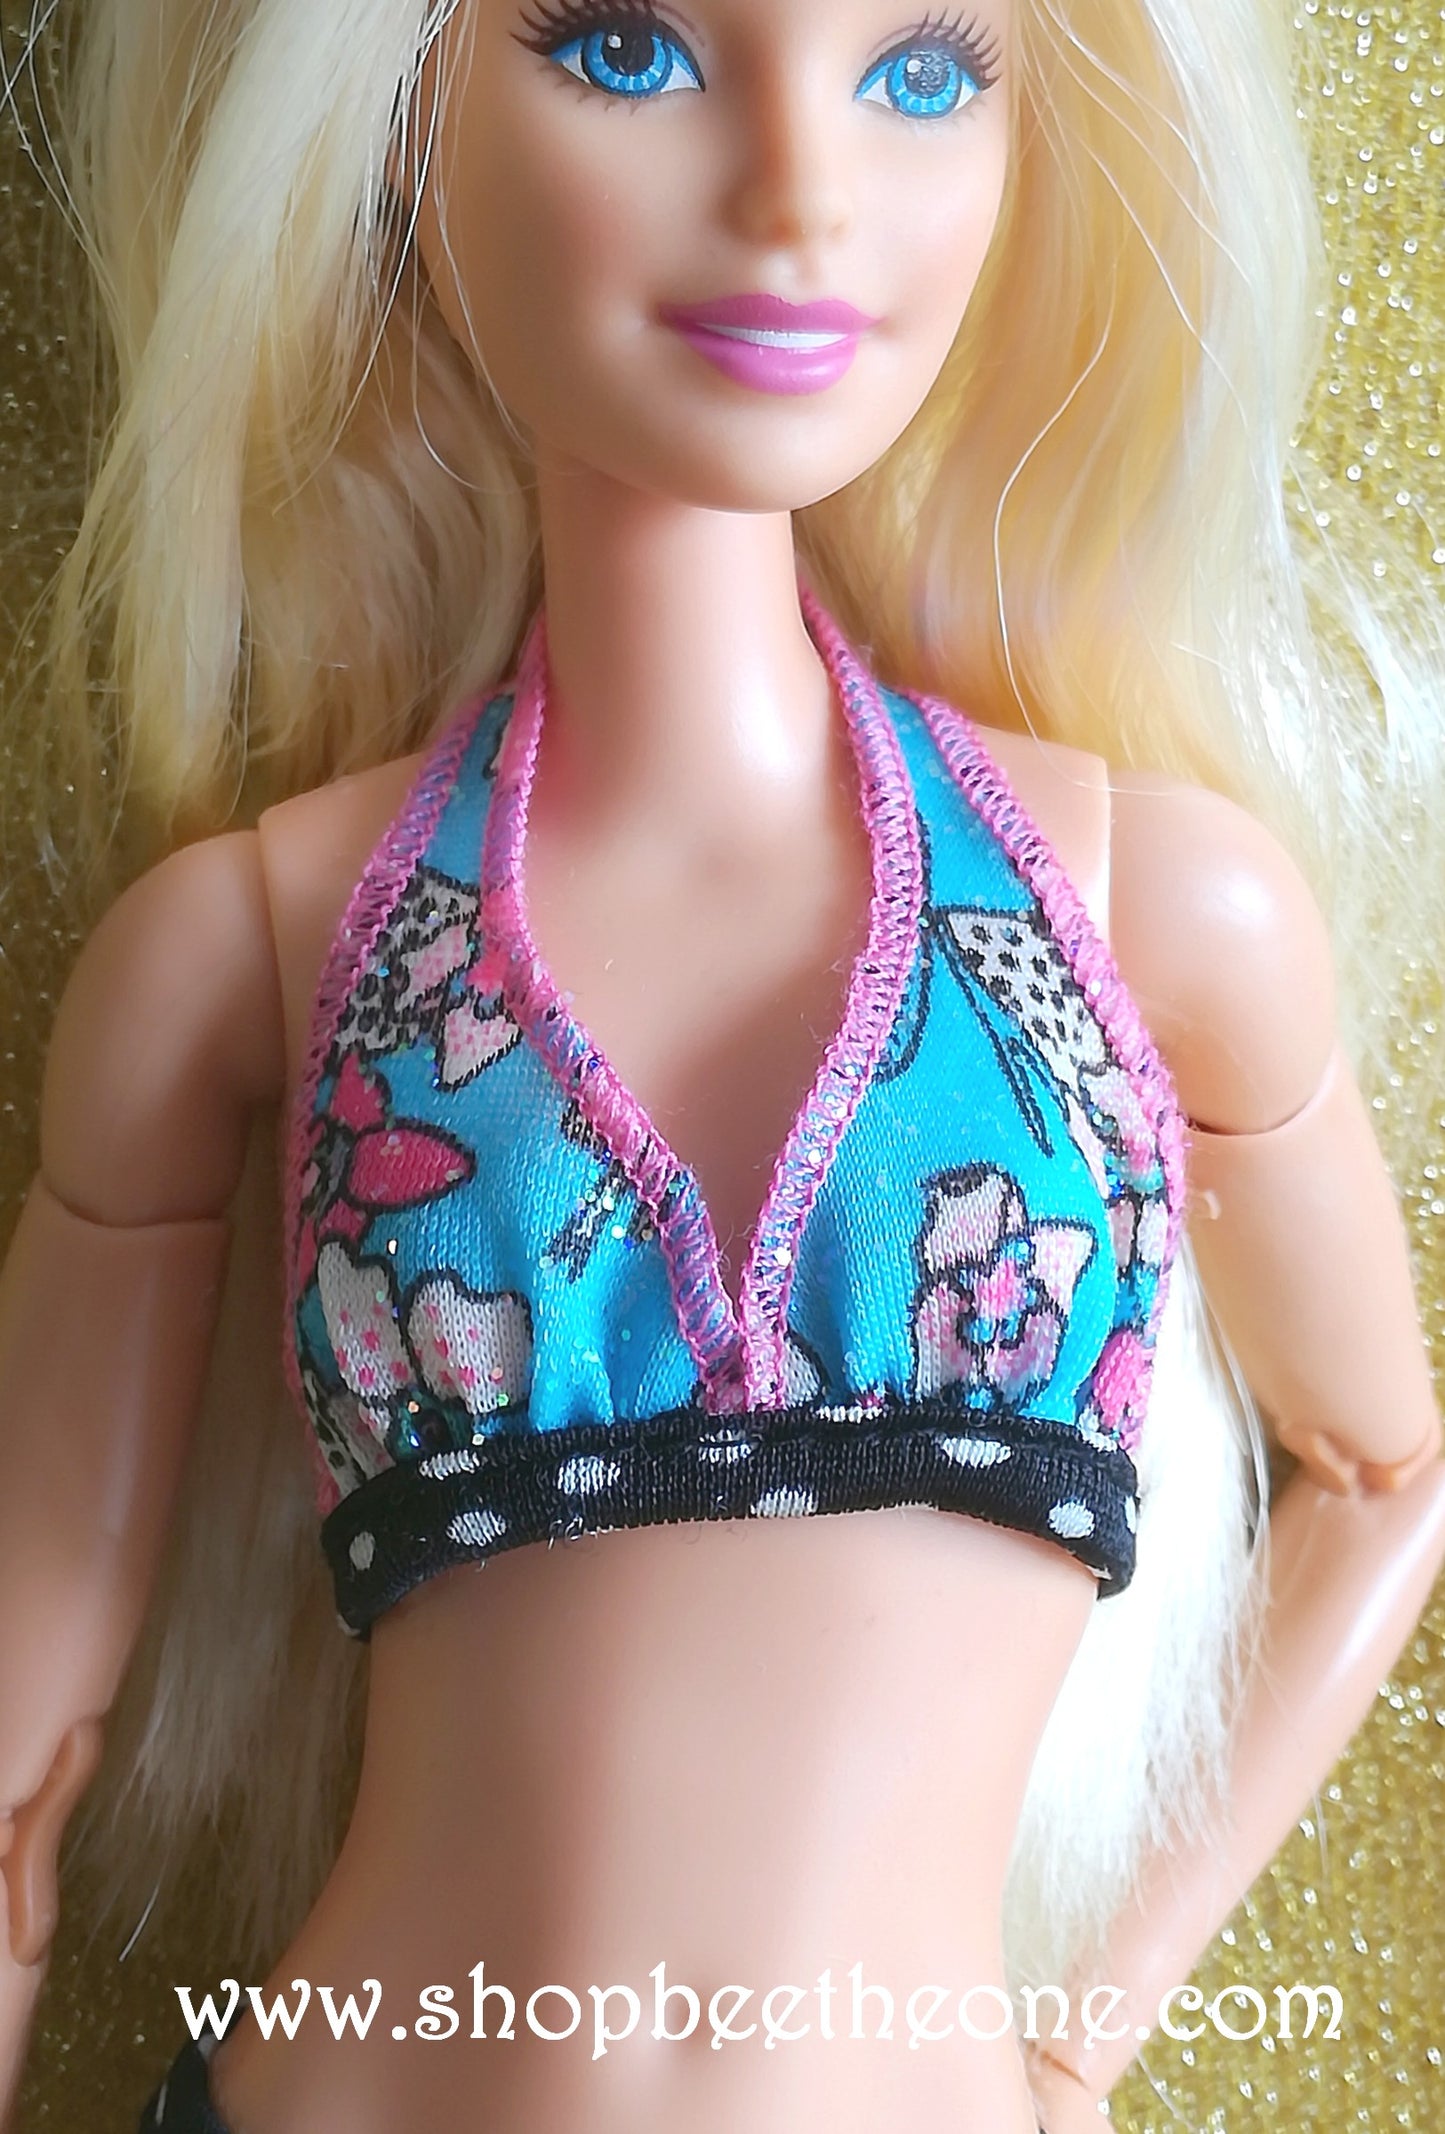 Barbie et le Secret des Sirènes (A Mermaid tale) - Barbie "Plage" - Mattel 2010 - Vêtements